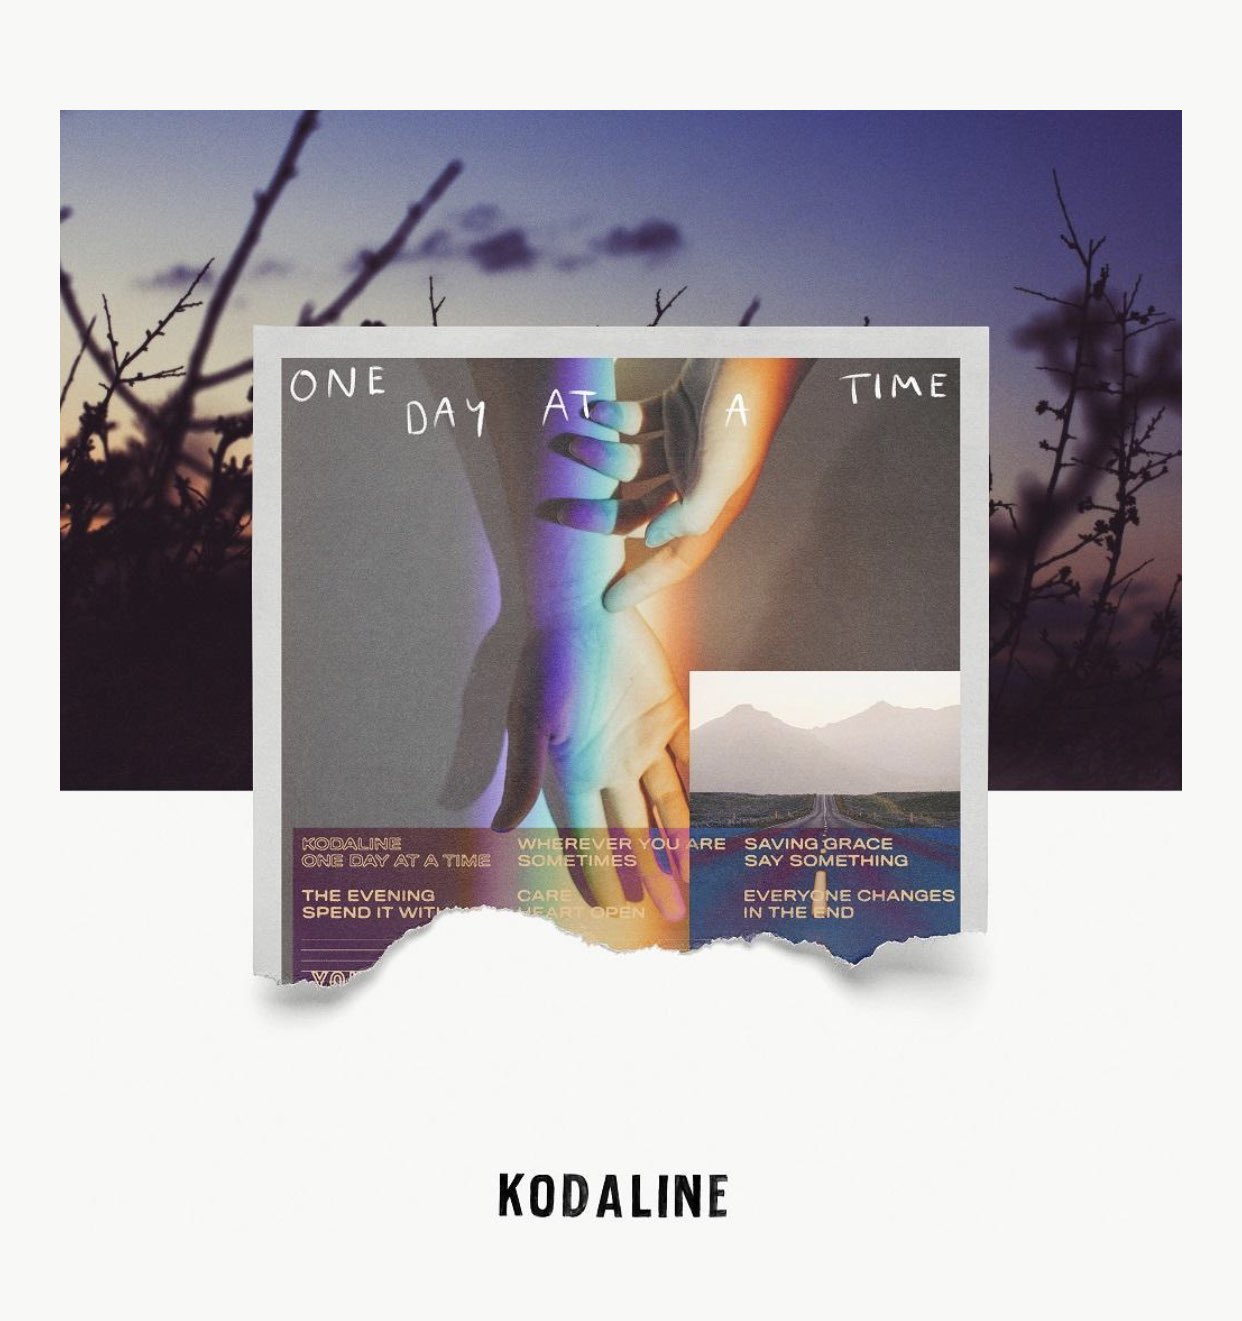 Kodaline vuelve al
ruedo con "One Day at a Time", su cuarto álbum de estudio